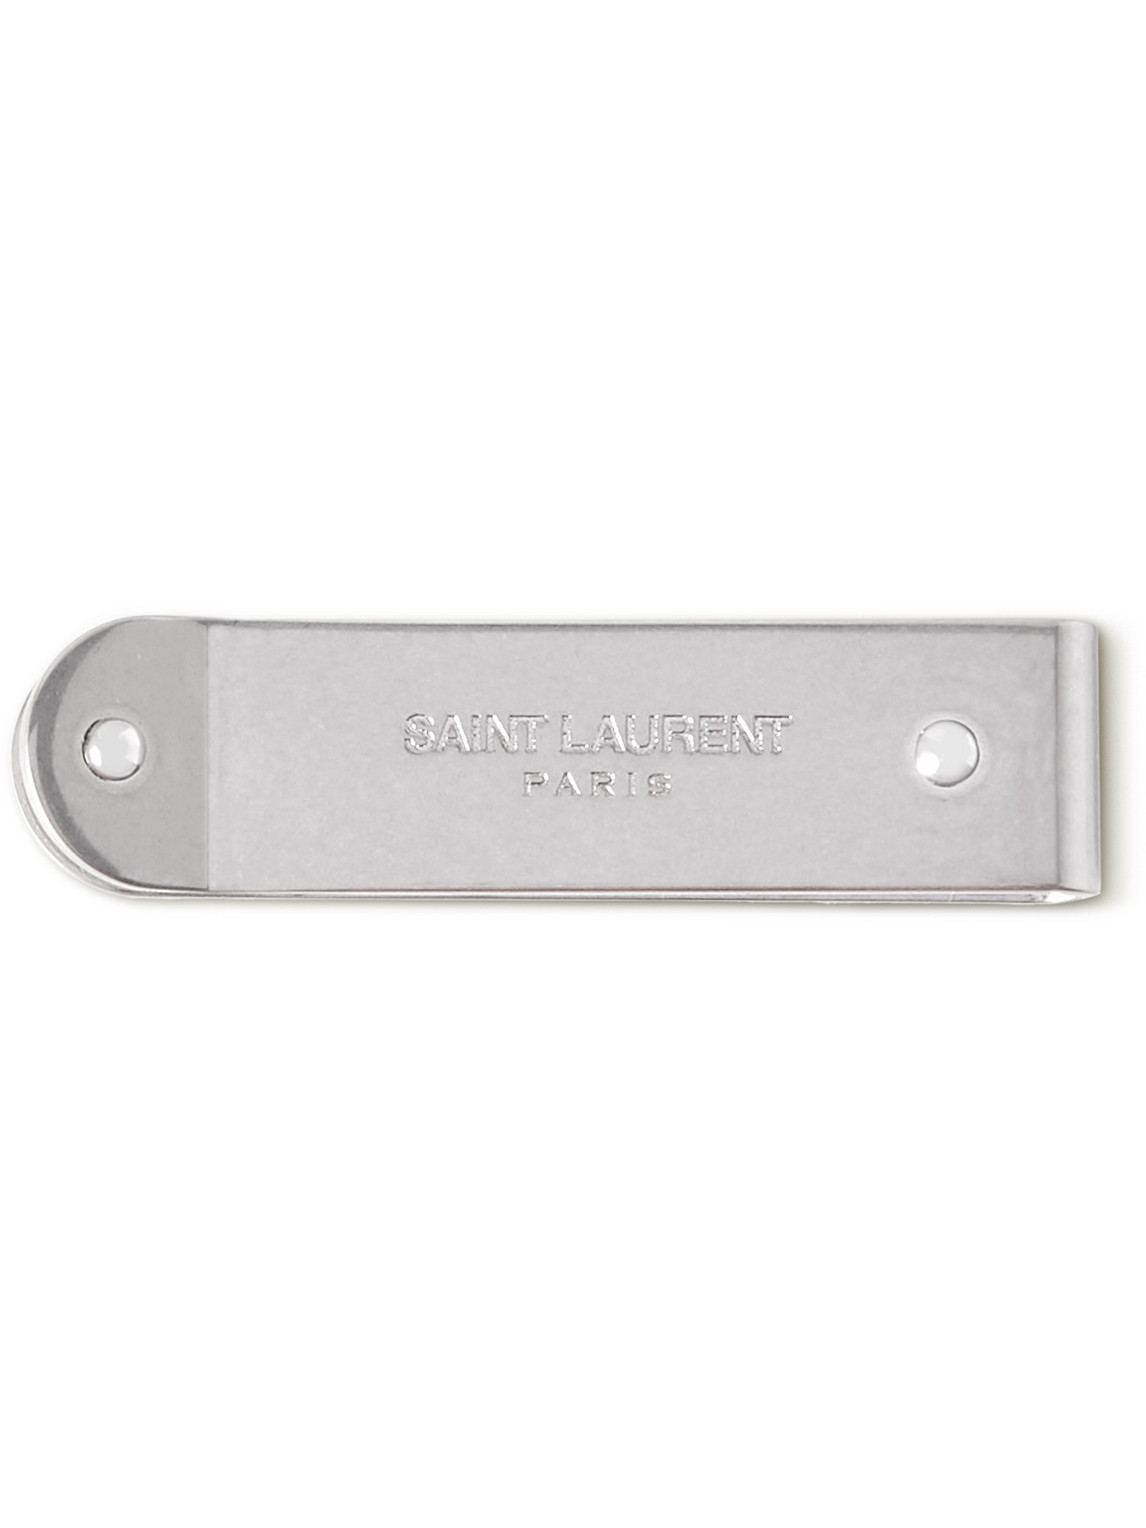 SAINT LAURENT - Logo-Engraved Silver-Tone Money Clip - Men - Silver von SAINT LAURENT